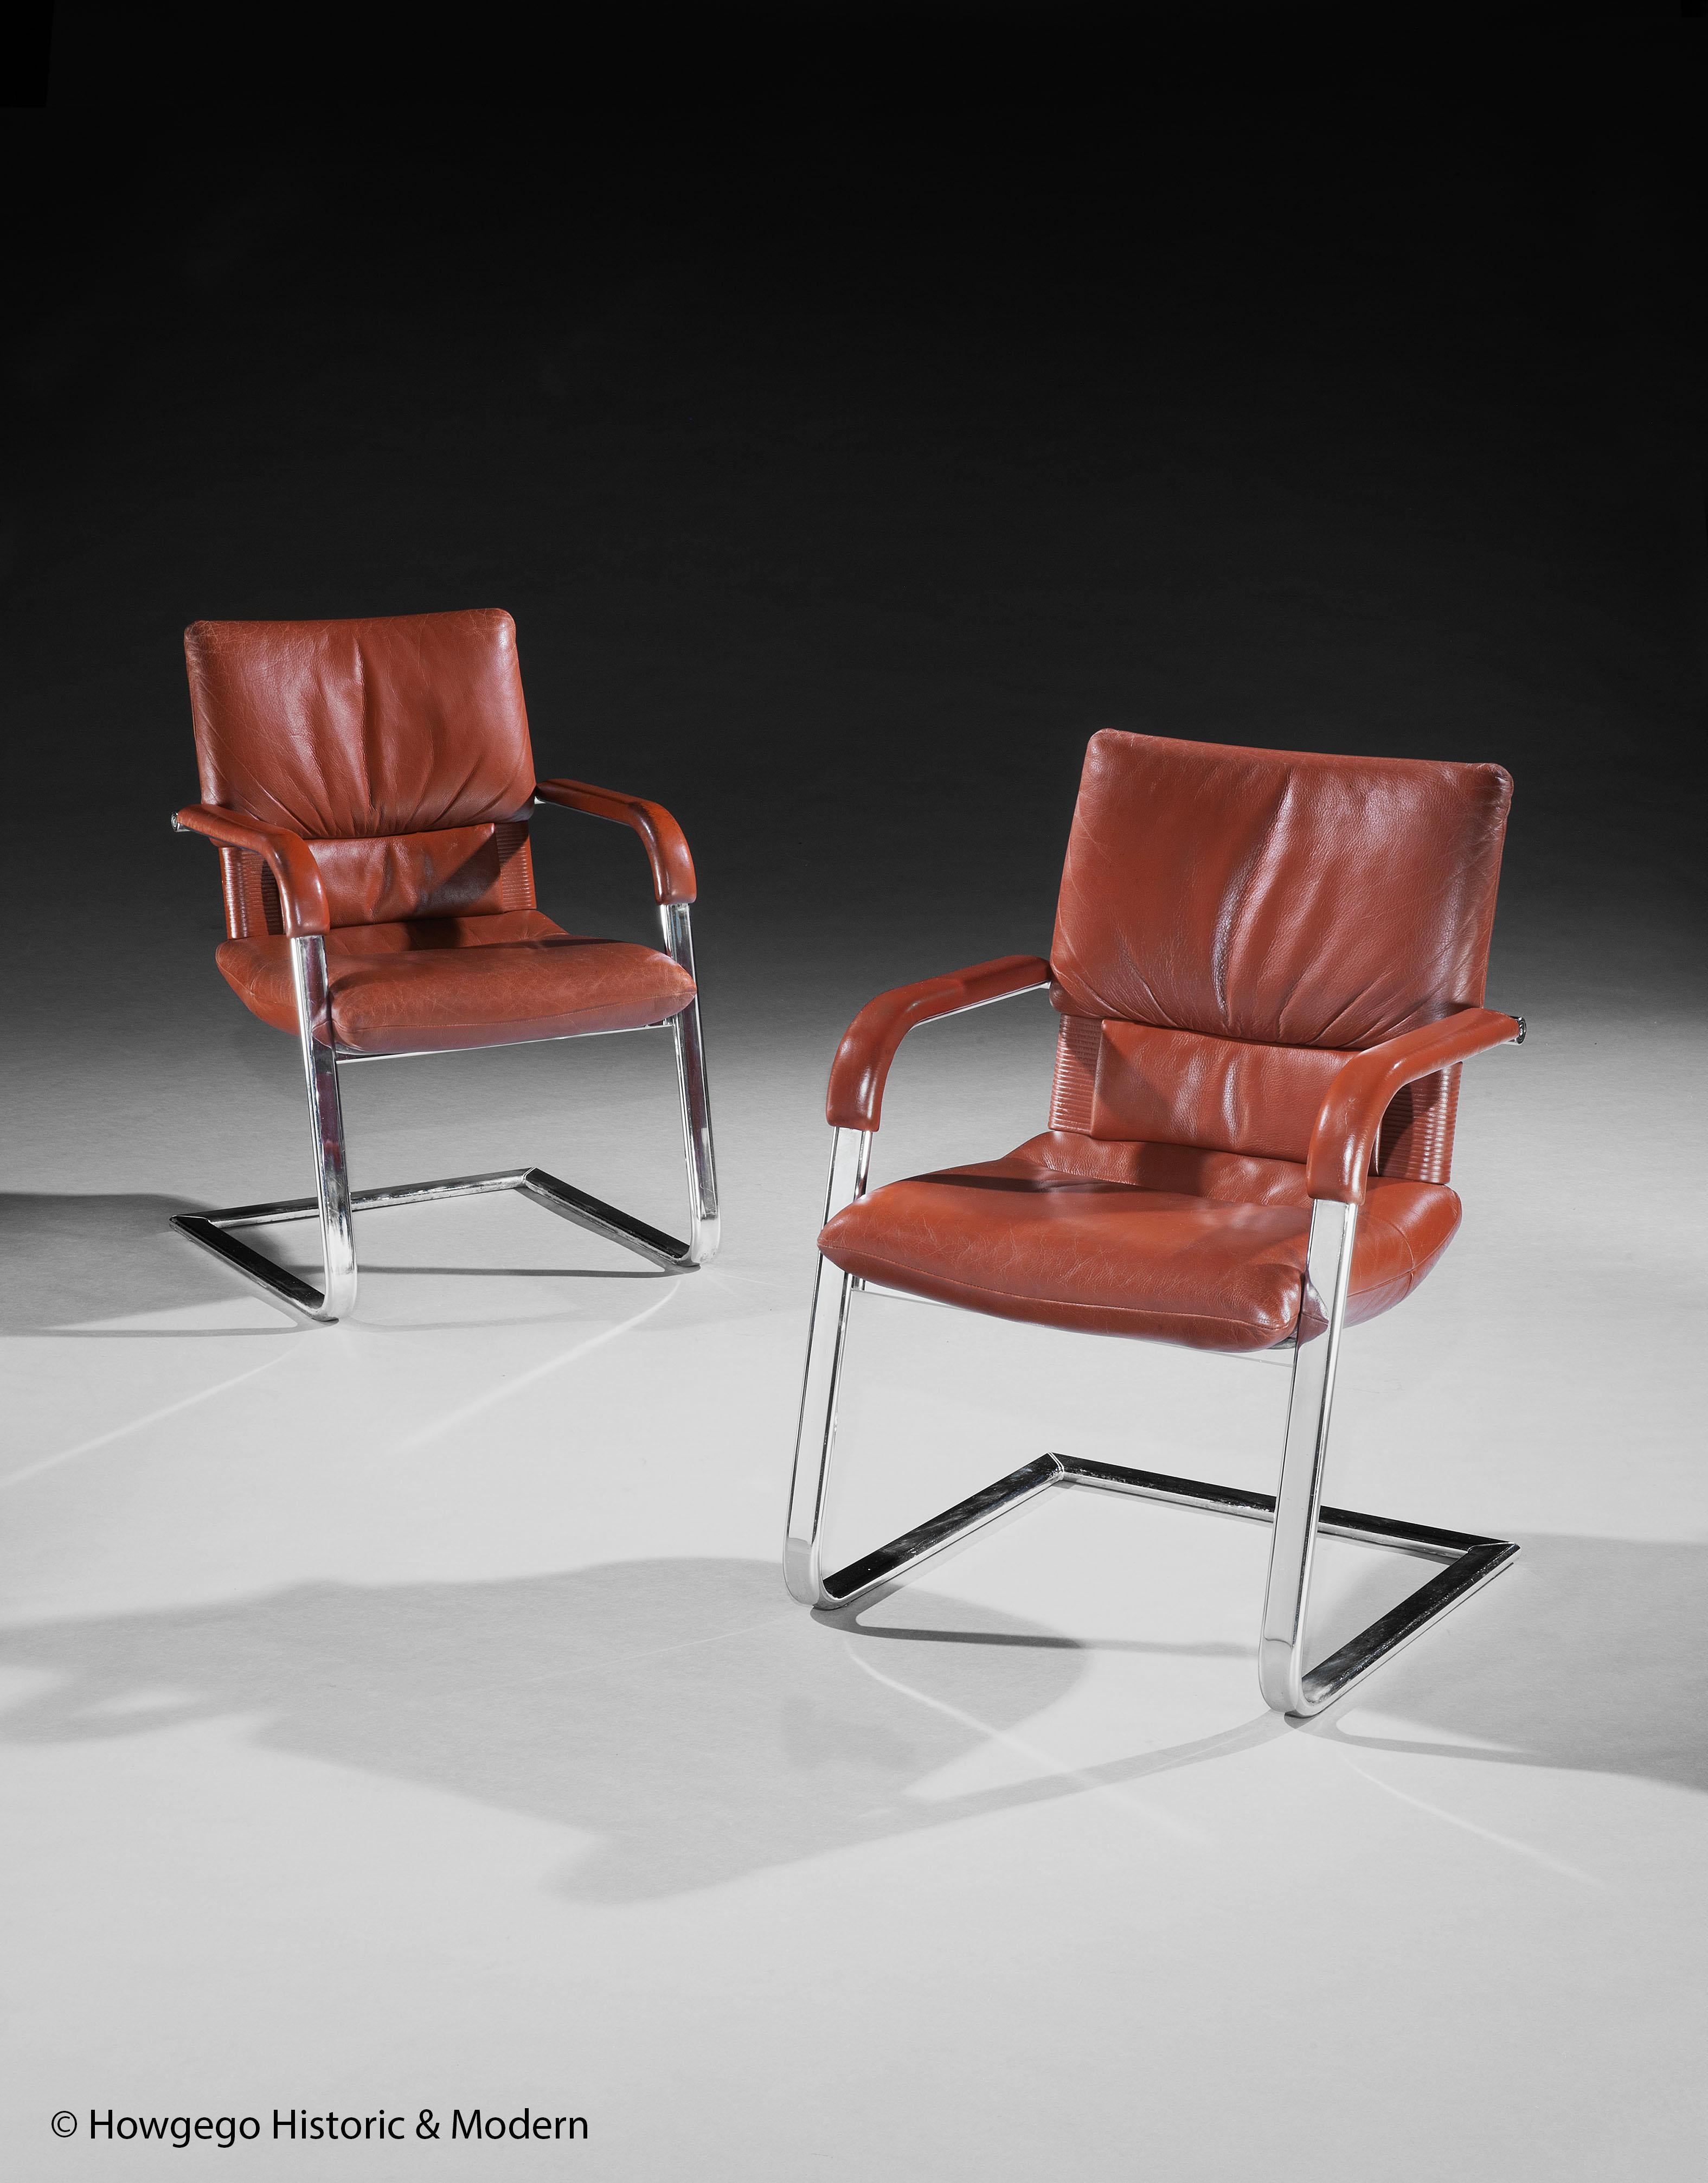 Stilvolles Vintage-Sesselpaar für die Wohnung oder das Büro im modernen Stil der Mitte des Jahrhunderts
Seltenes Überbleibsel eines alten Büromöbels.
Mit der Signatur des Künstlers, die zusammen mit dem Vitra-Stempel in eine Chromplatte eingraviert